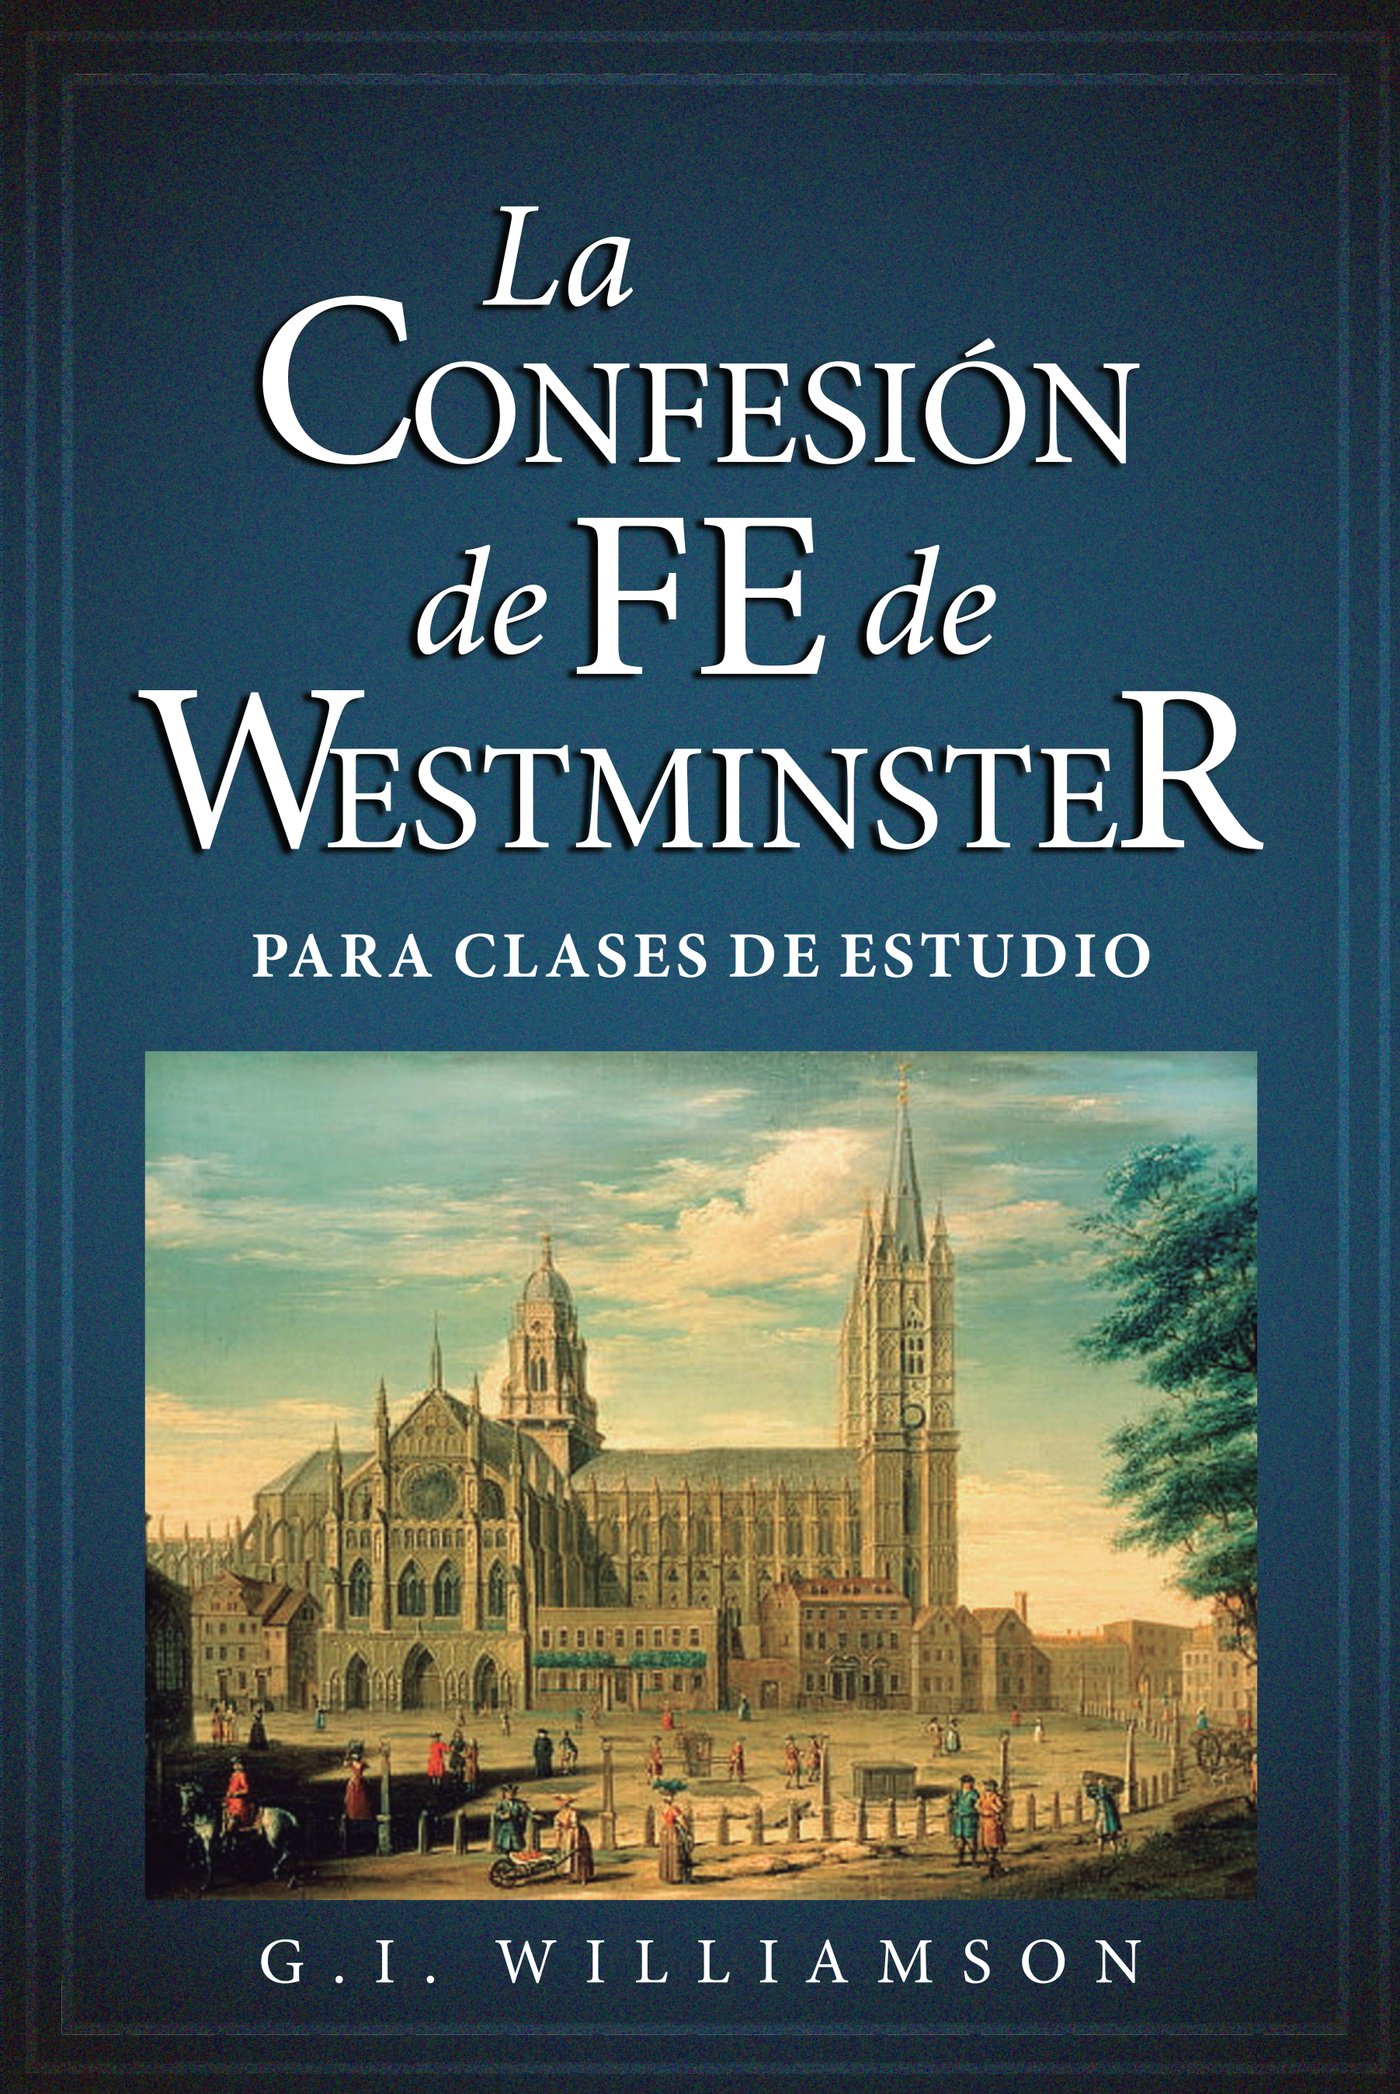 La Confesión de Fe de Westminster